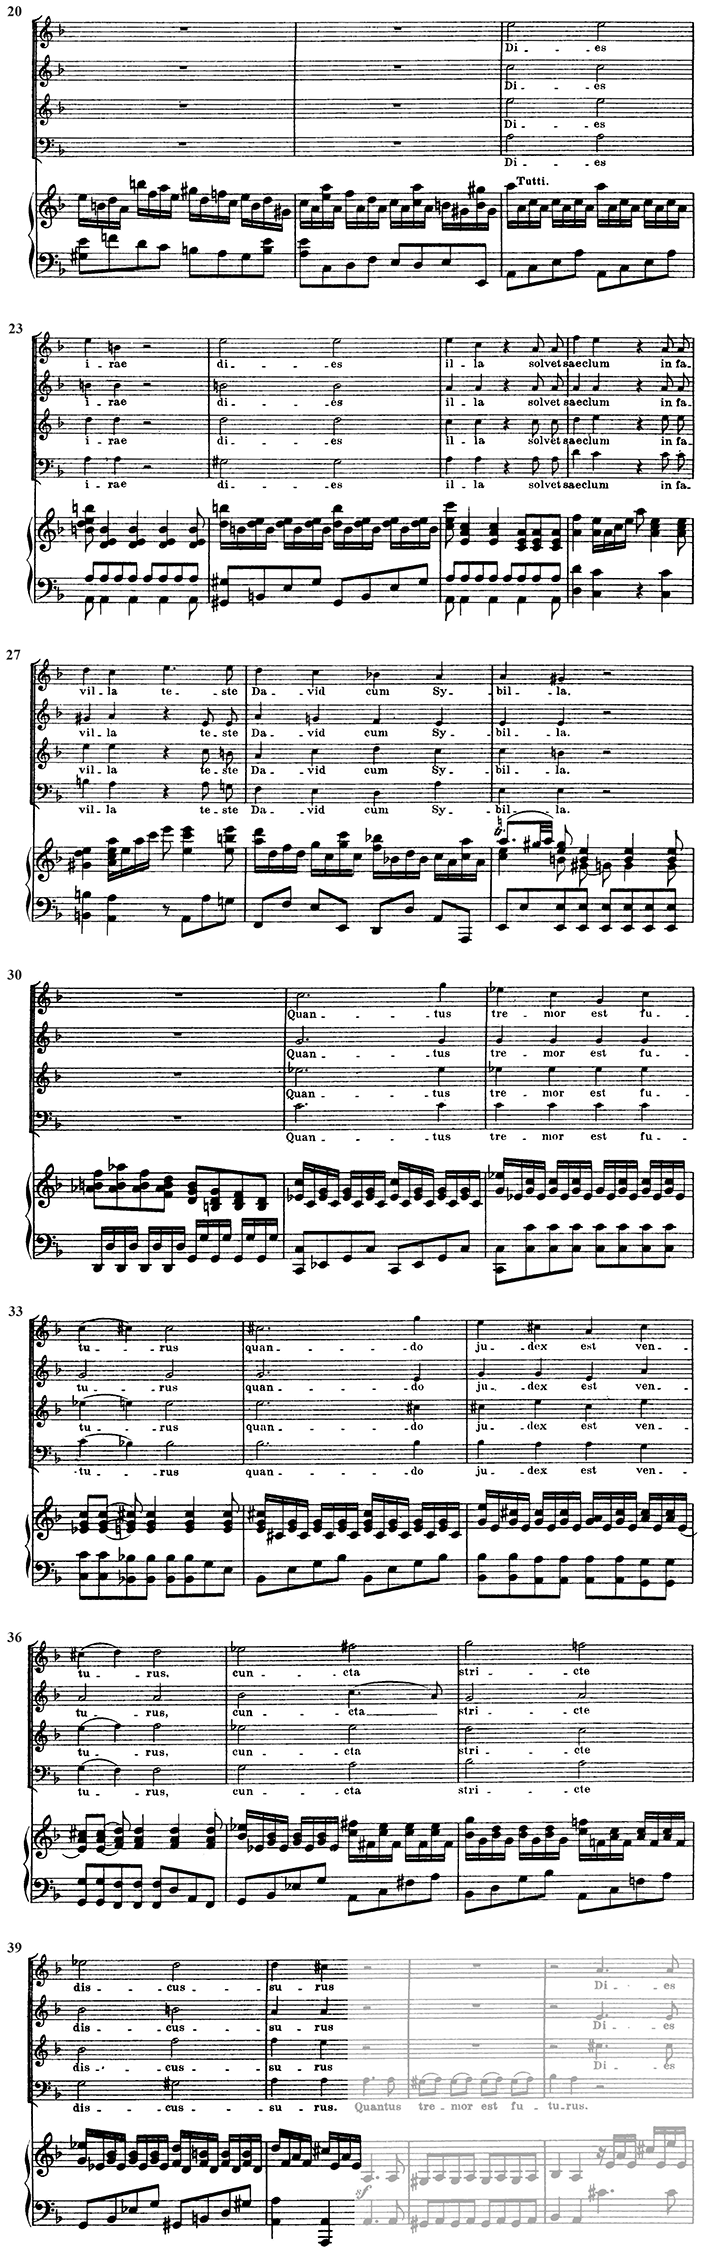 Wolfgang Amadeus Mozart: Requiem, Dies irae - Lezione 2